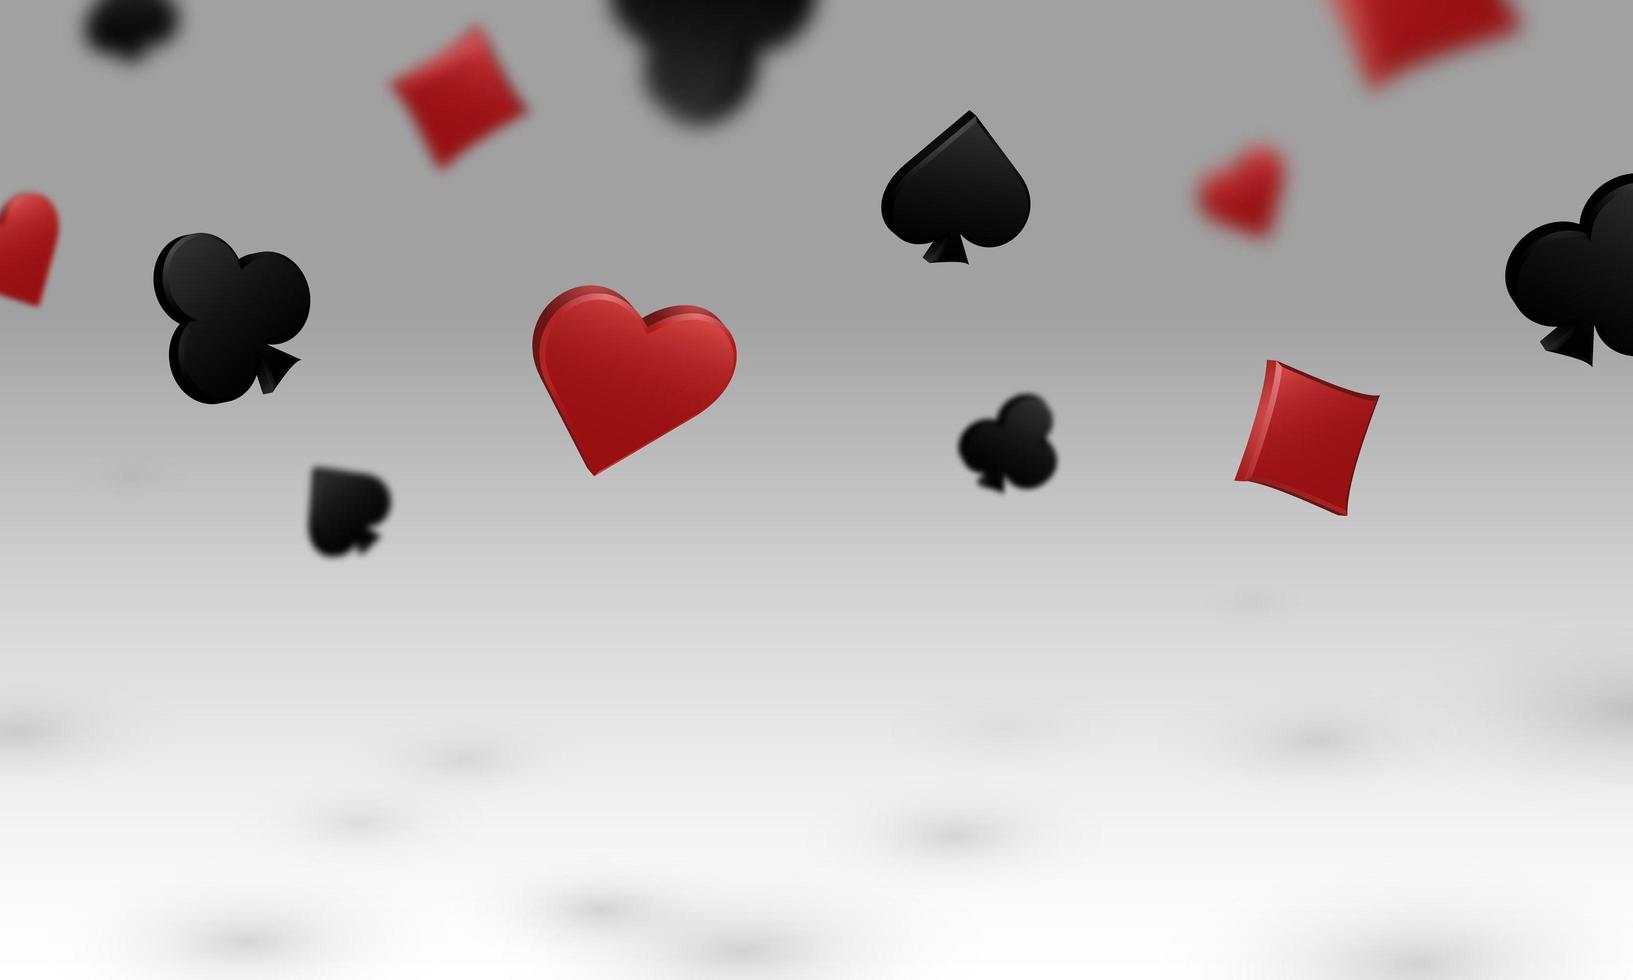 todos los palos de naipes caen proyectando una sombra sobre fondo blanco. ilustración vectorial para juegos de casino, póquer y cartas. vector